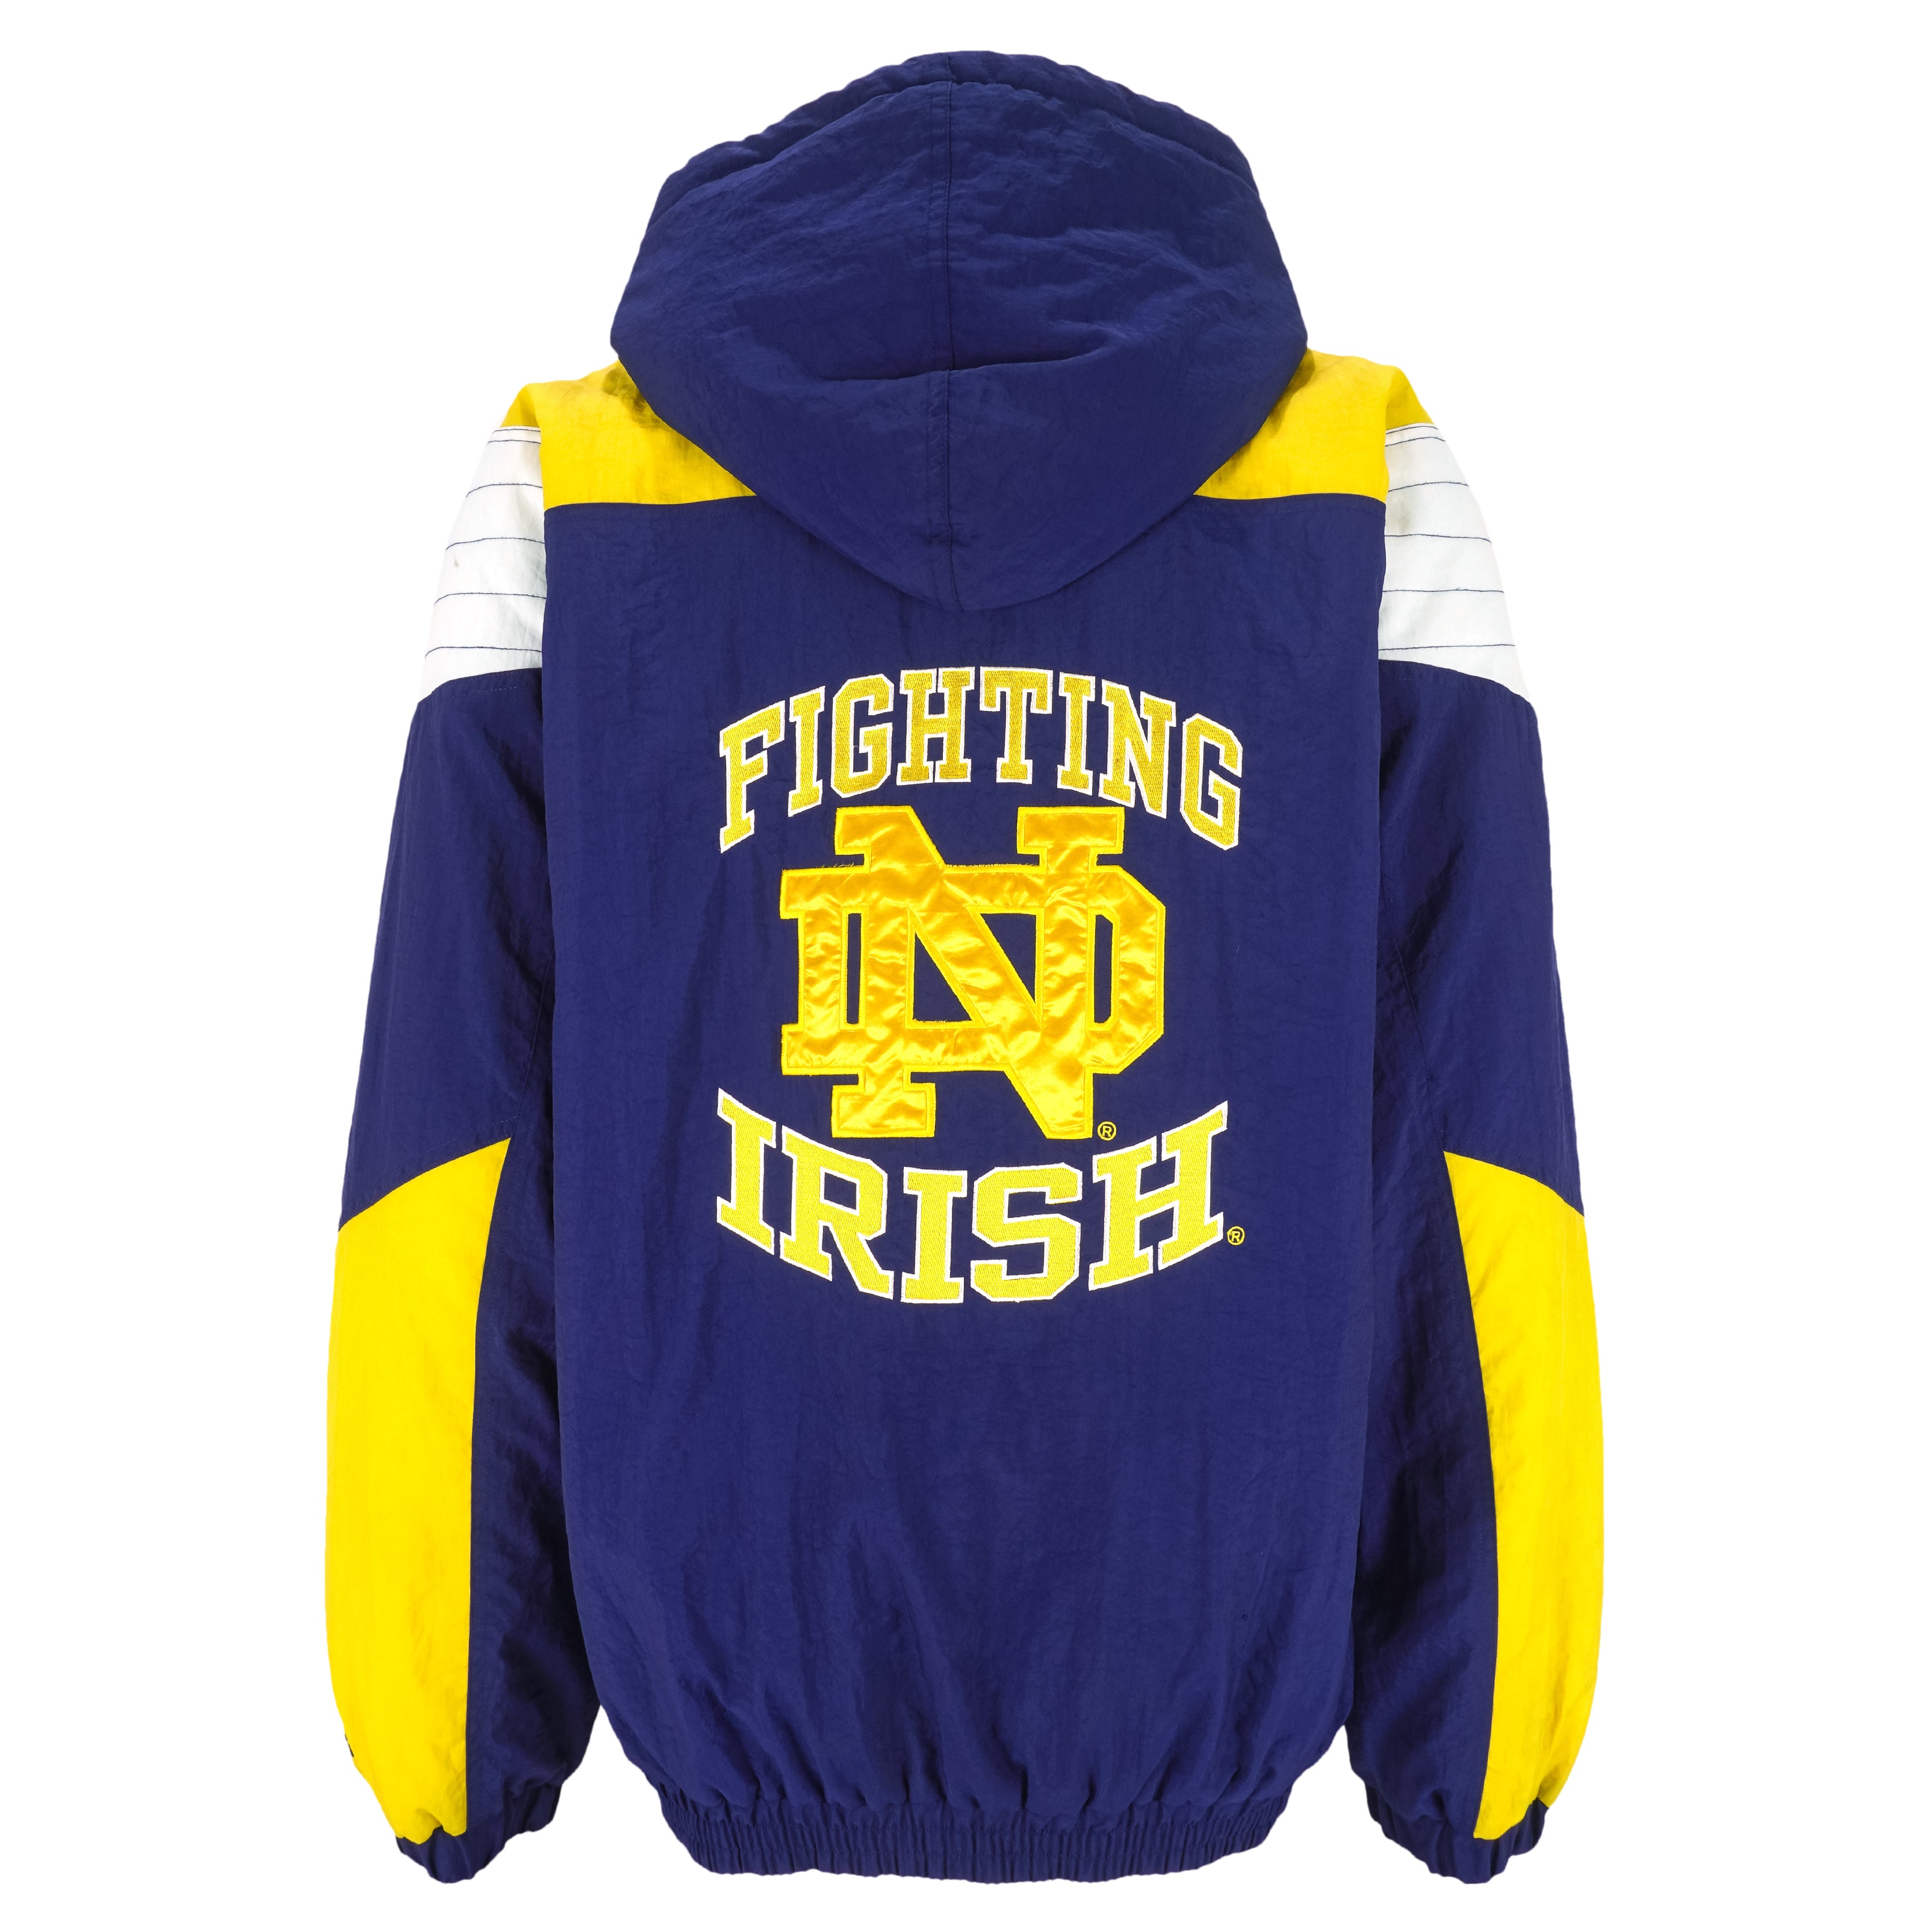 90s Notre Dame Fighting Irish Starter Jacket - Men's Large